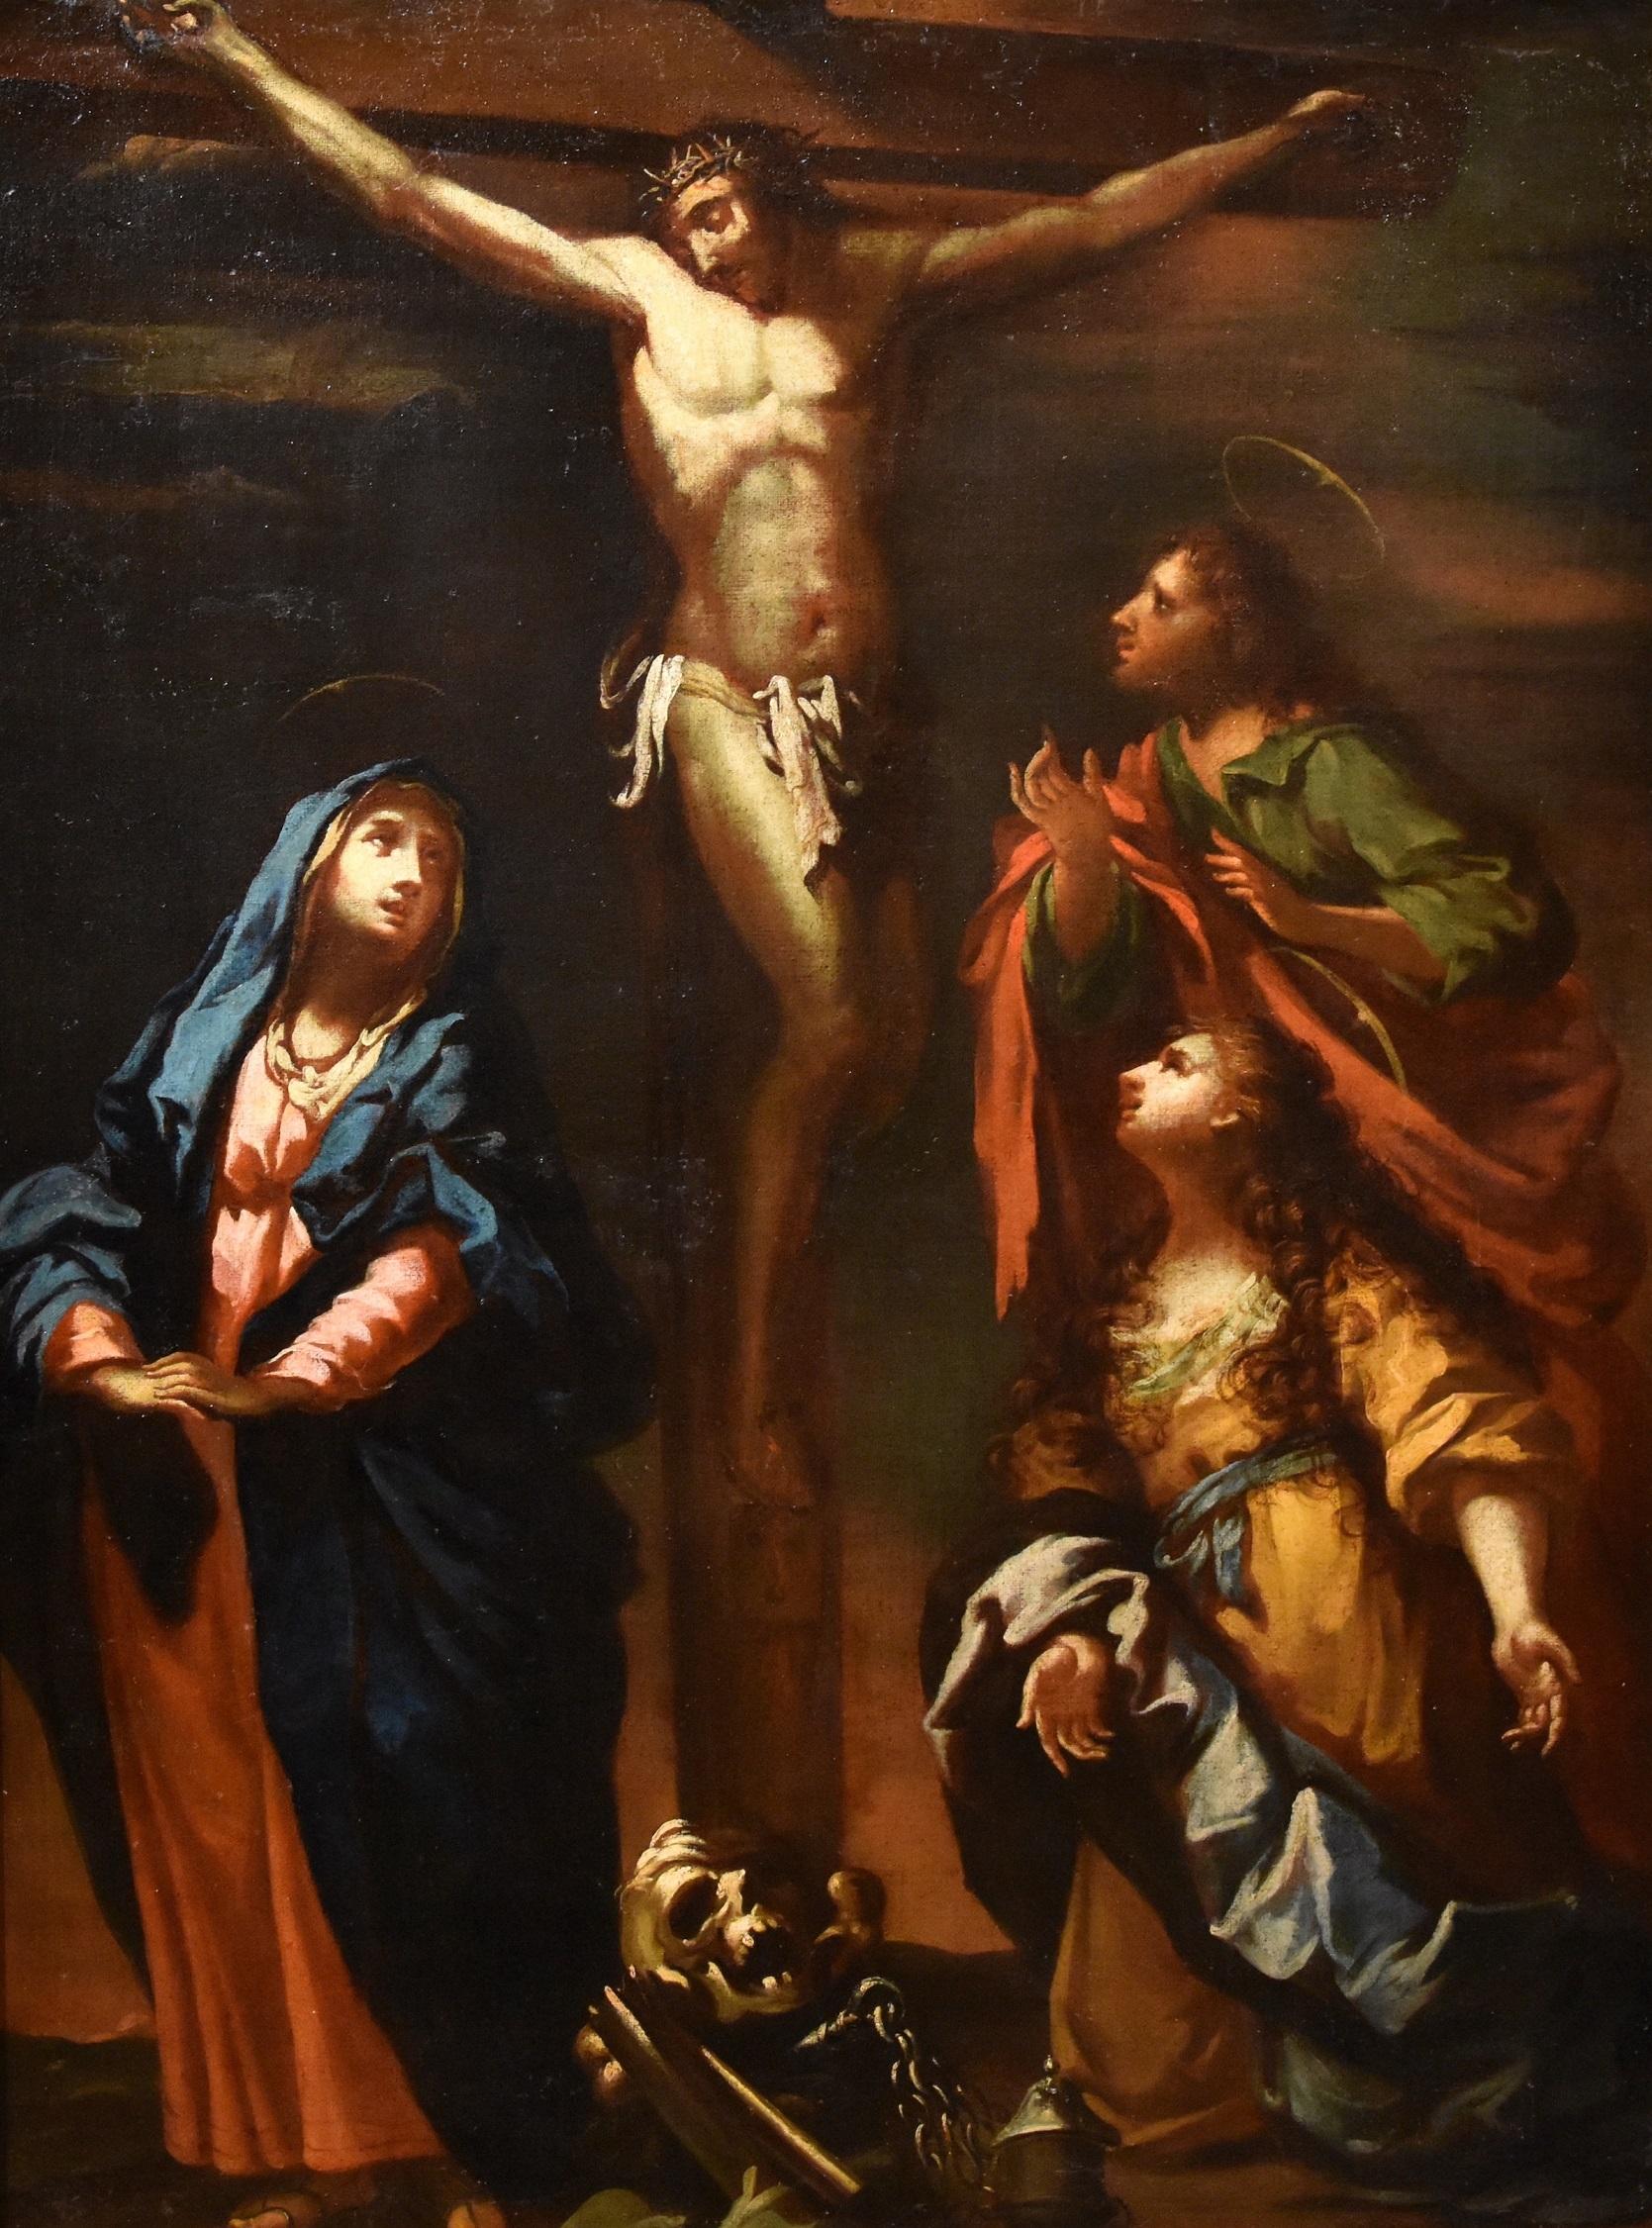 Christ, Kreuzigung, Sagrestani, Gemälde, Öl auf Leinwand, Alter Meister, 17./18. Jahrhundert, Italien – Painting von  Giovanni Camillo Sagrestani (Florence, 1660 - 1731)